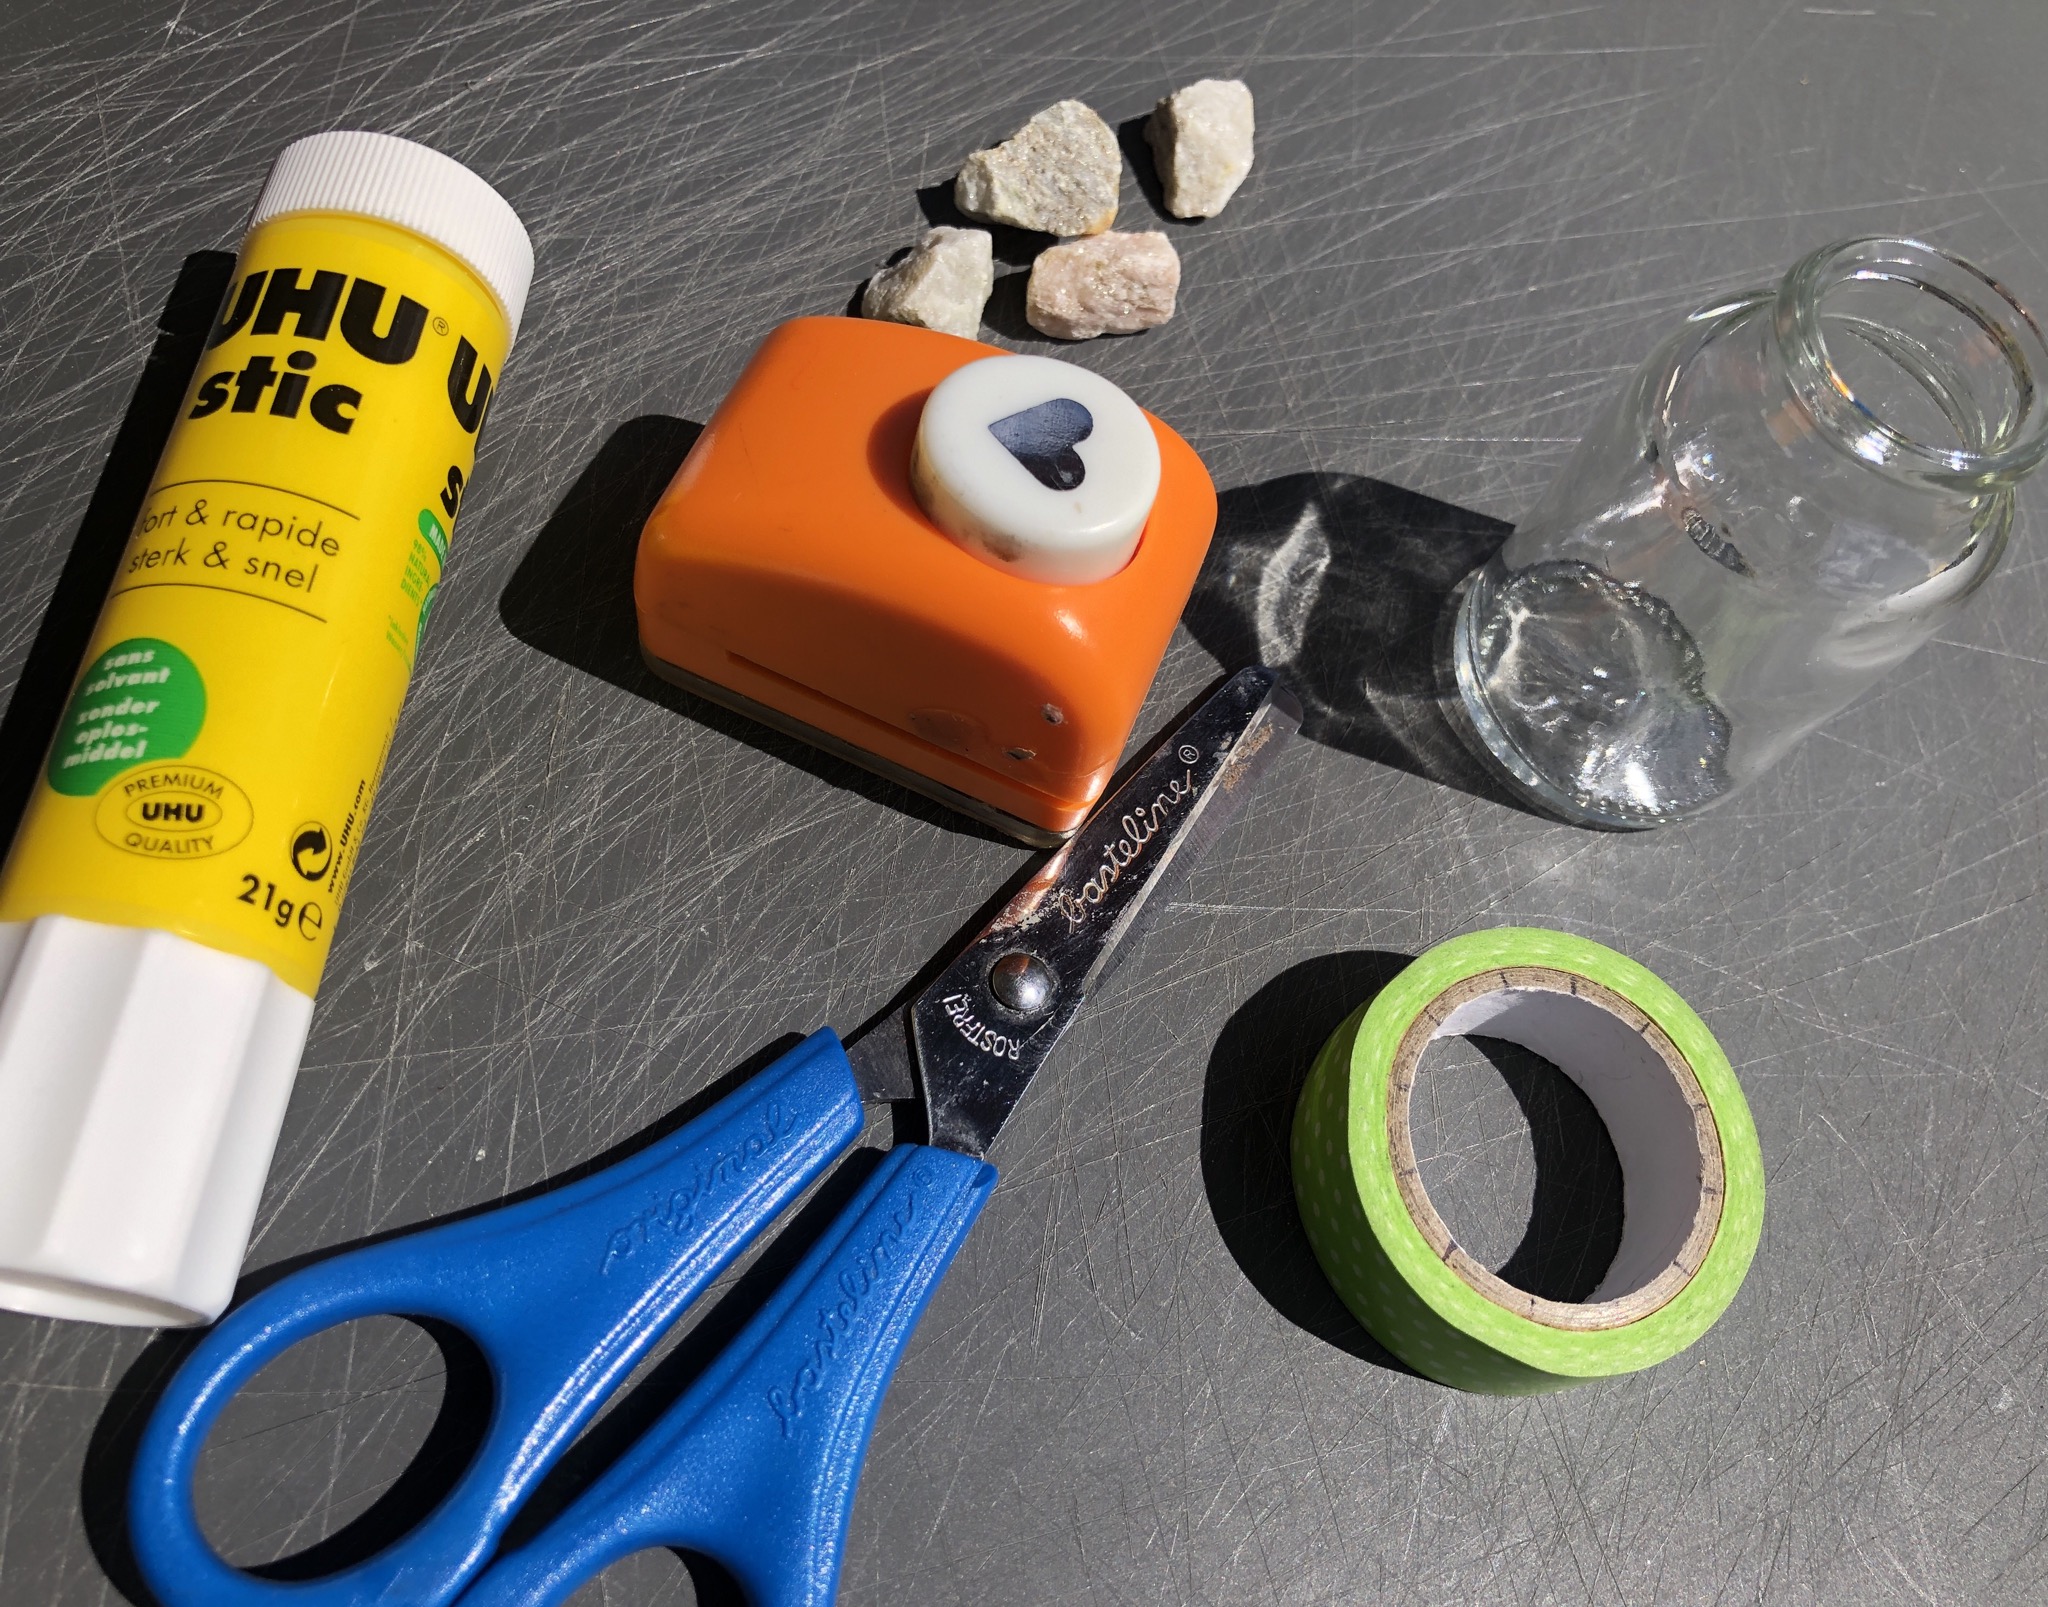 Bild zum Schritt 1 für das Bastel- und DIY-Abenteuer für Kinder: 'Hilfsmittel und Materialien bereit stellen.'